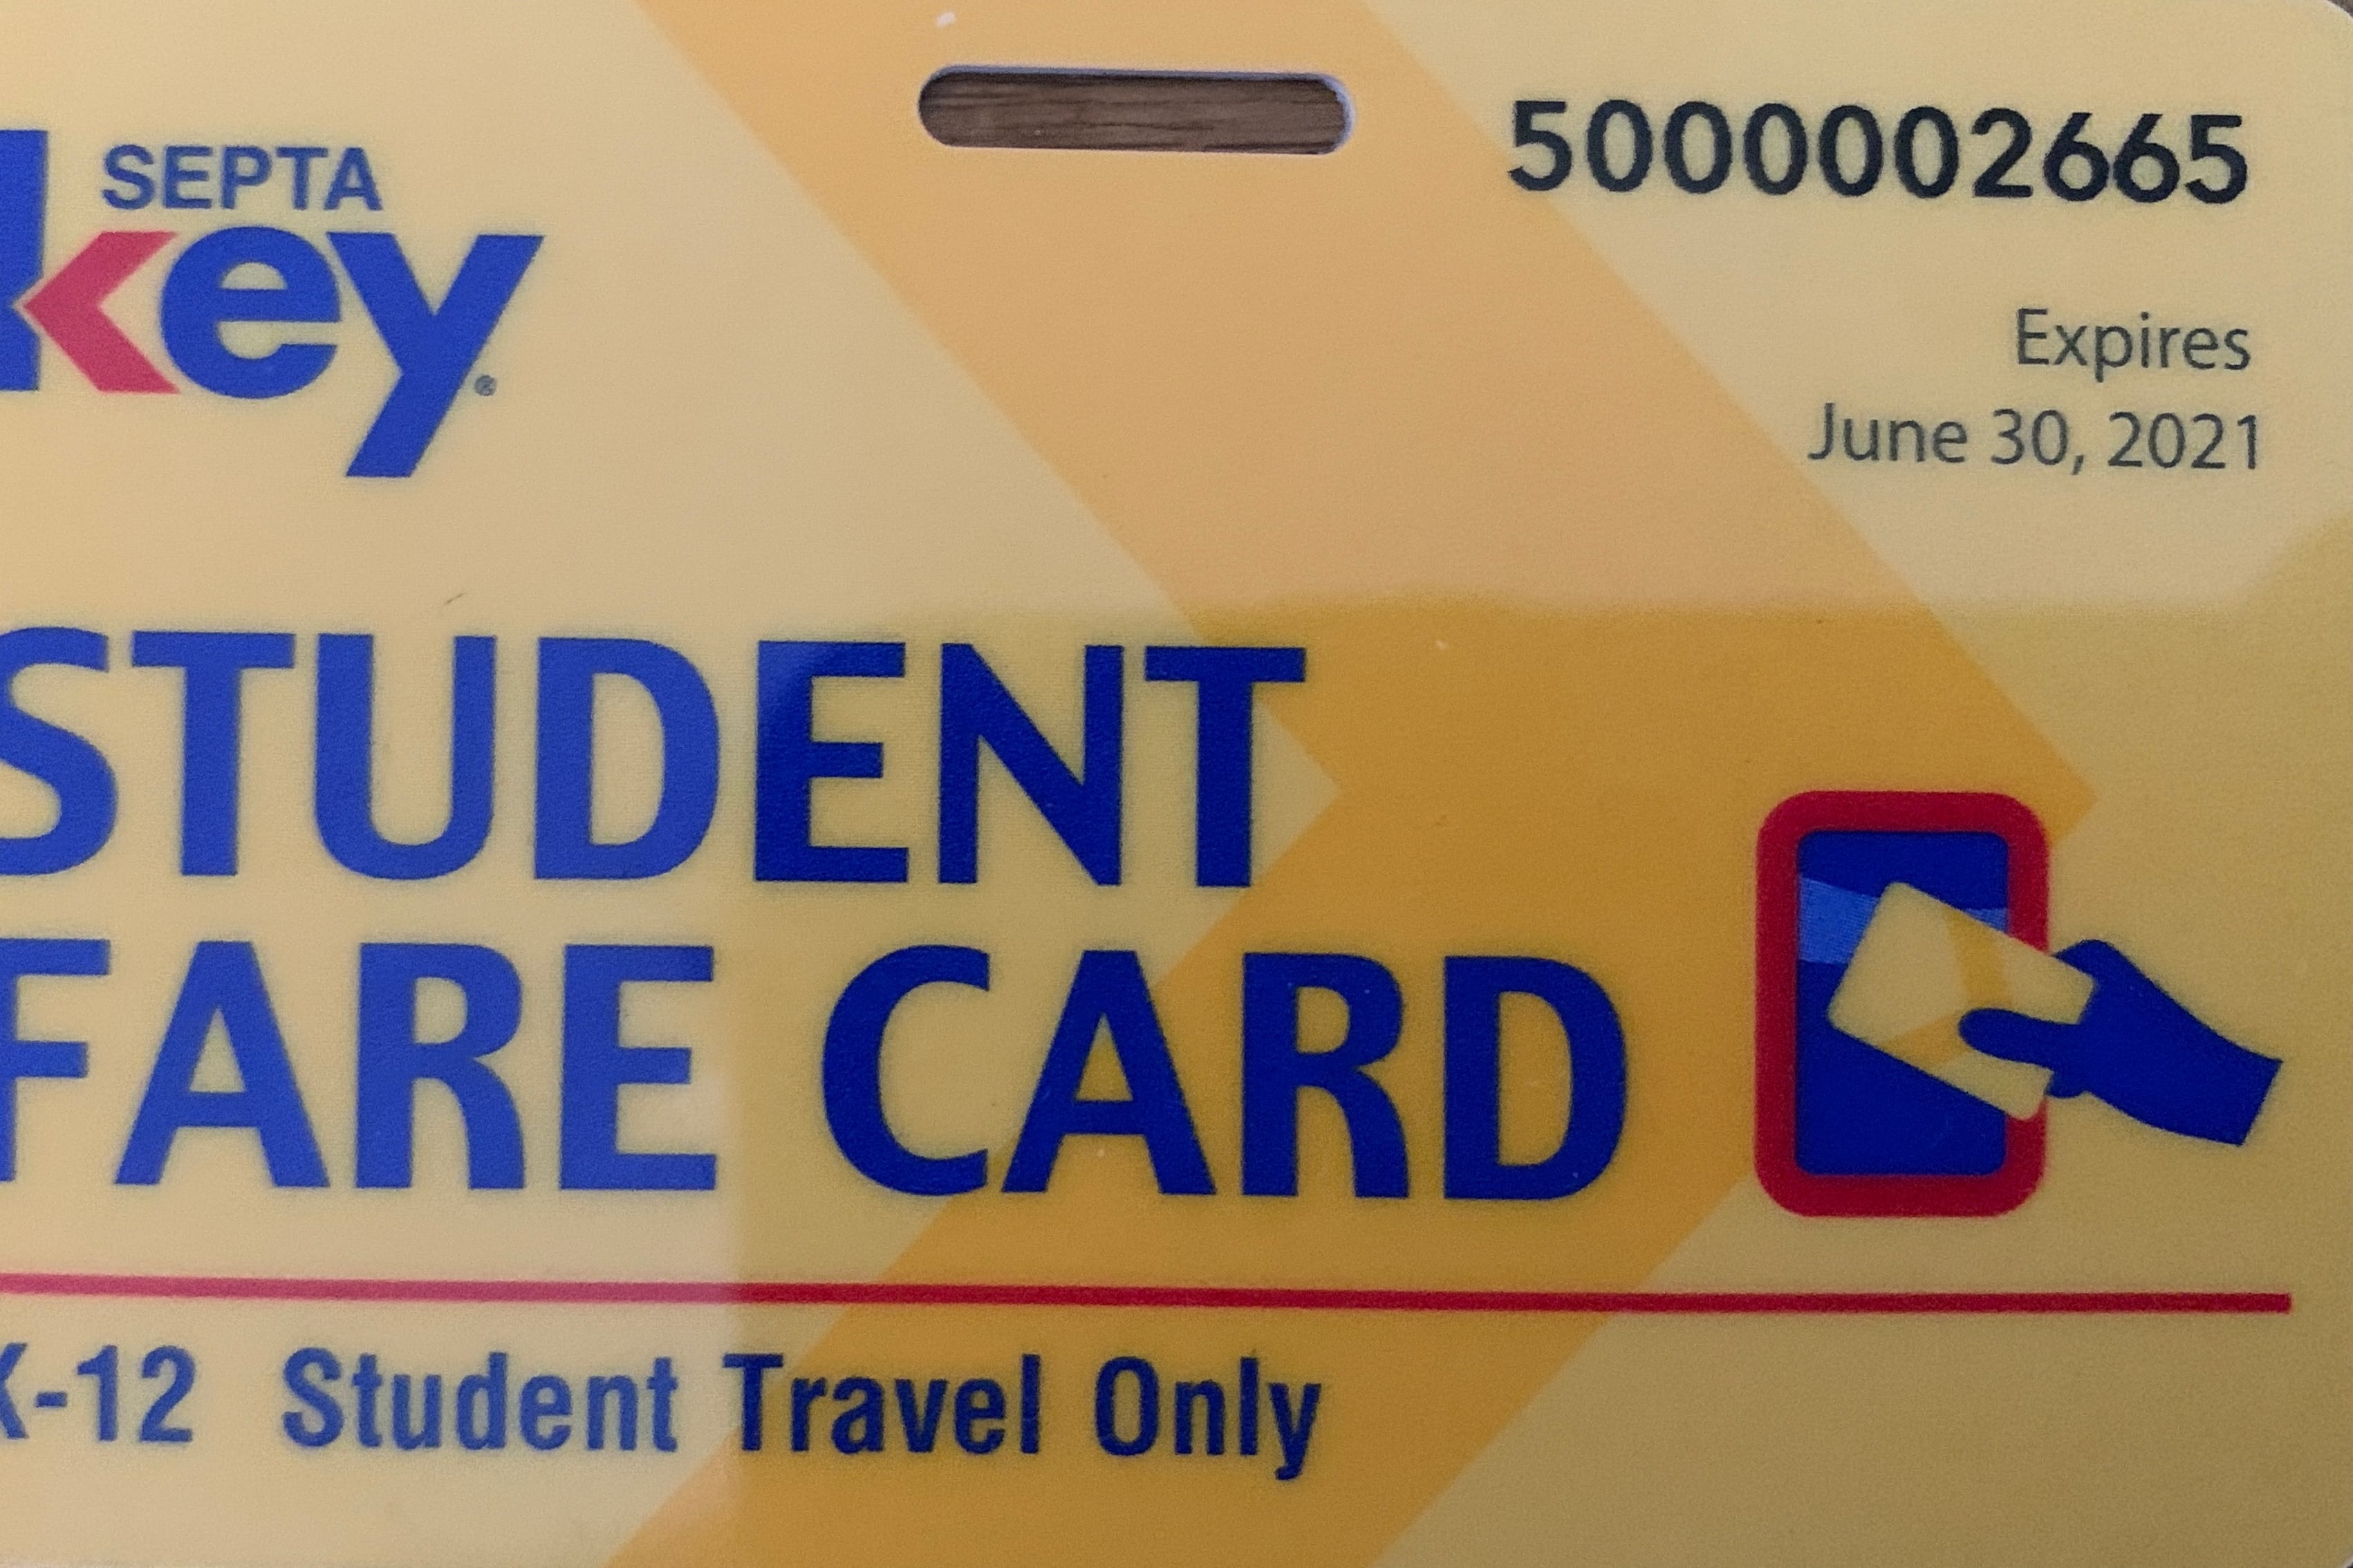 picture of fare card